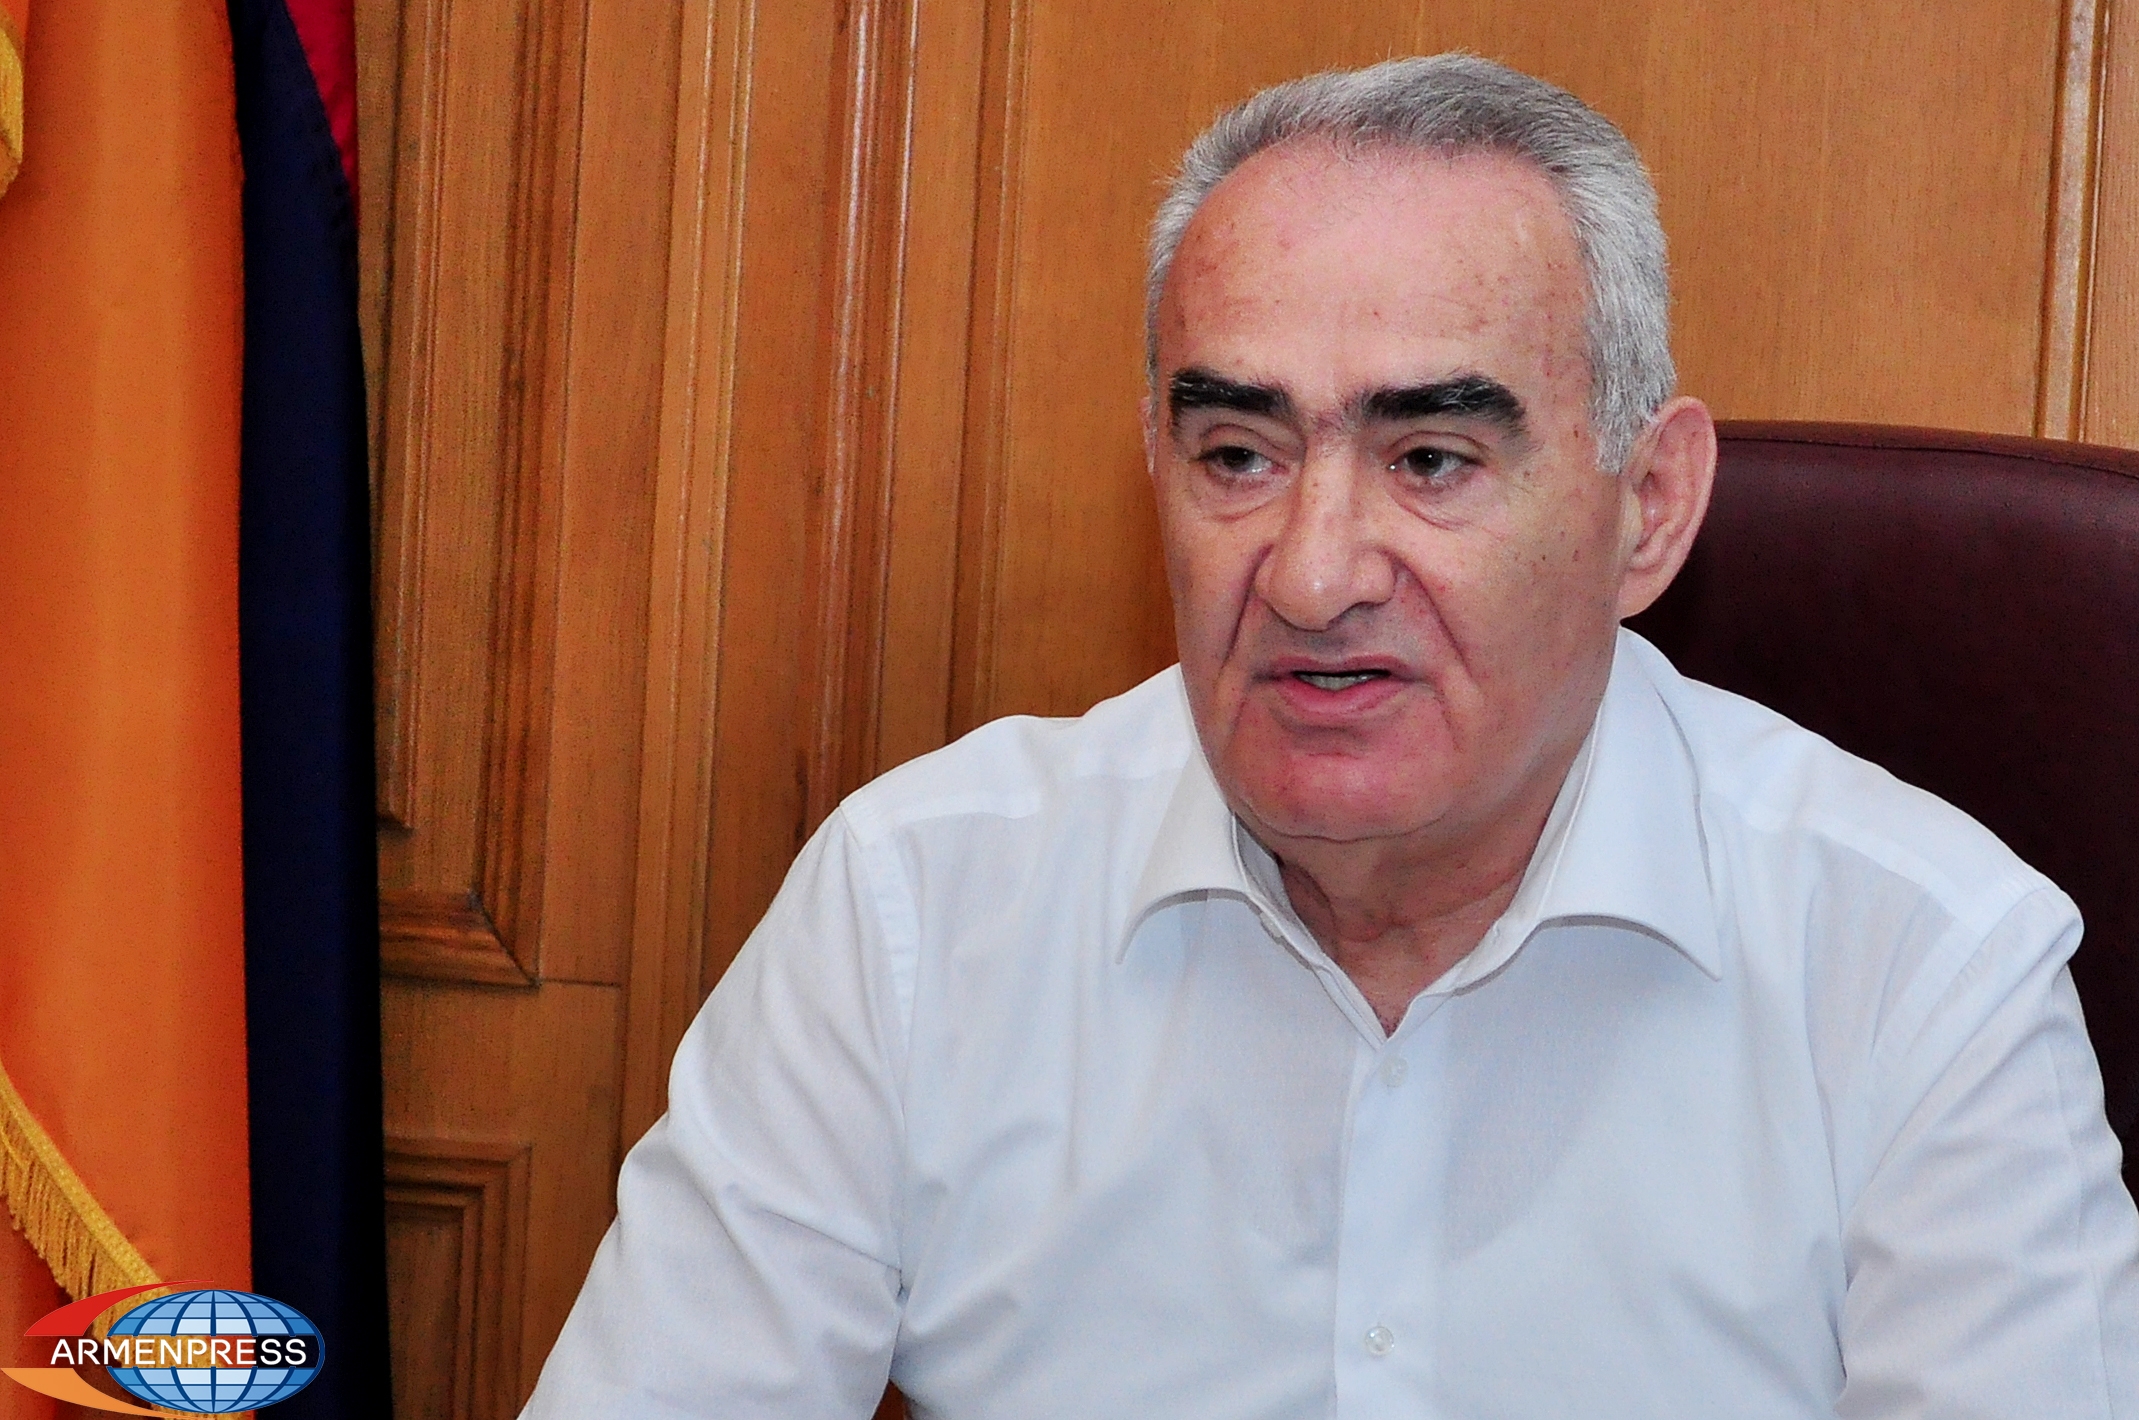 Возникла необходимость изменения модели политического правления: спикер НС Армении